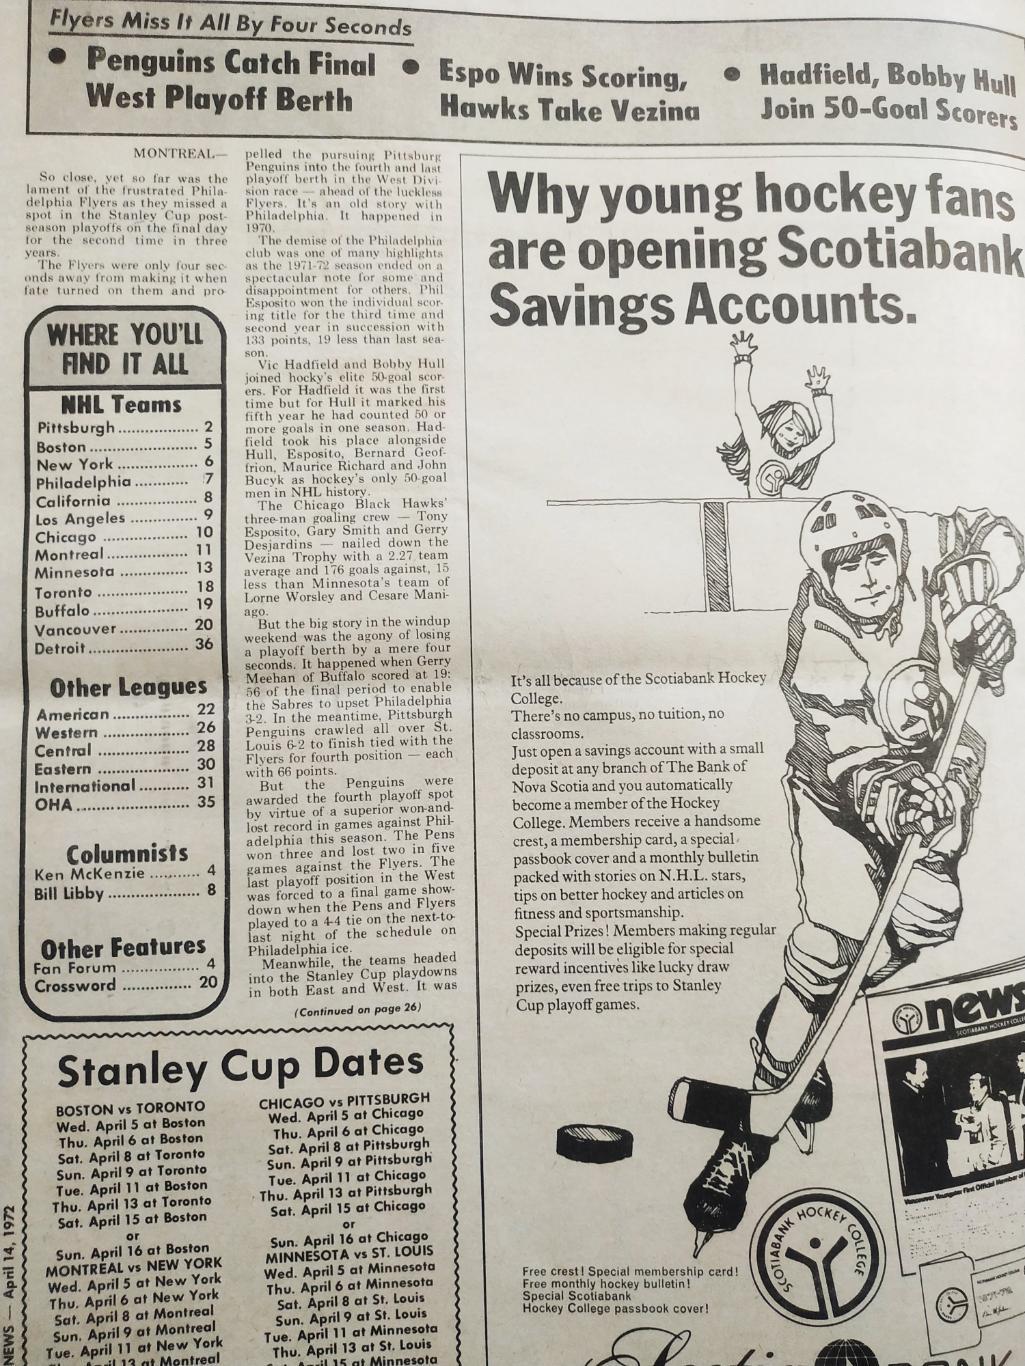 ХОККЕЙ ЖУРНАЛ ЕЖЕНЕДЕЛЬНИК НХЛ НОВОСТИ ХОККЕЯ APR.14 1972 NHL THE HOCKEY NEWS 1